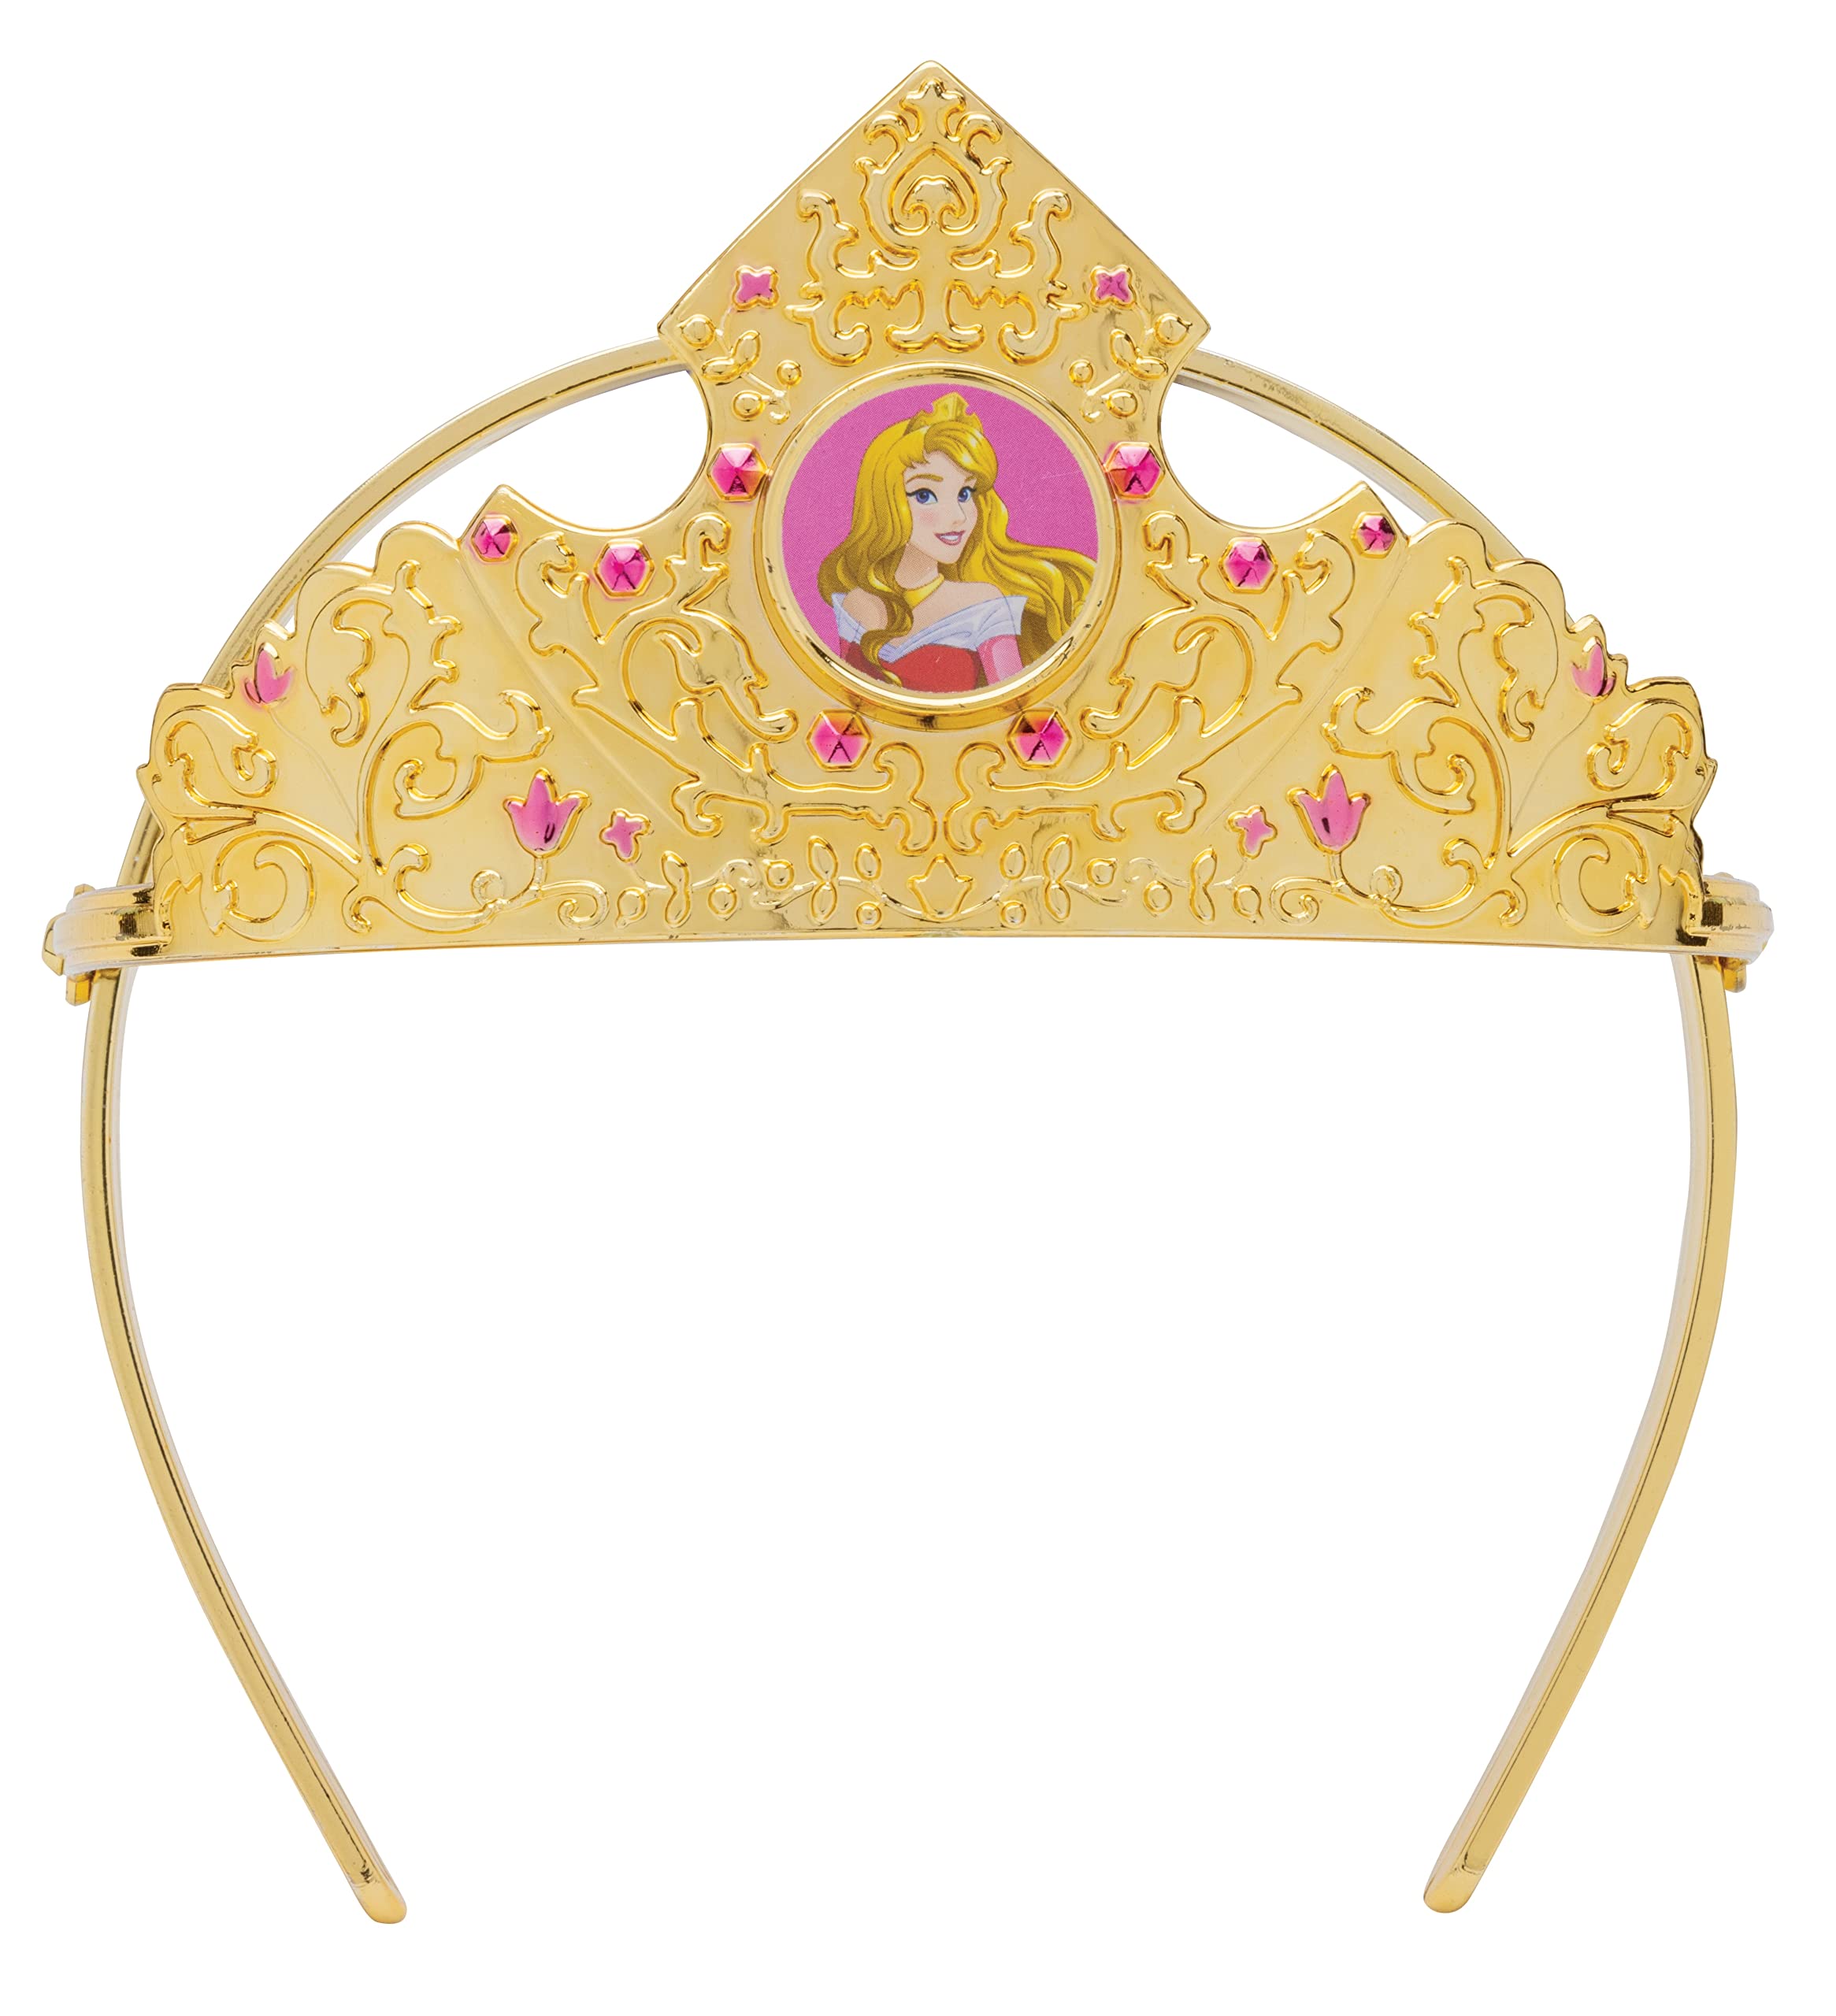 Essential Princess Tiara, Official Disney Princess Costume Accessory Piece